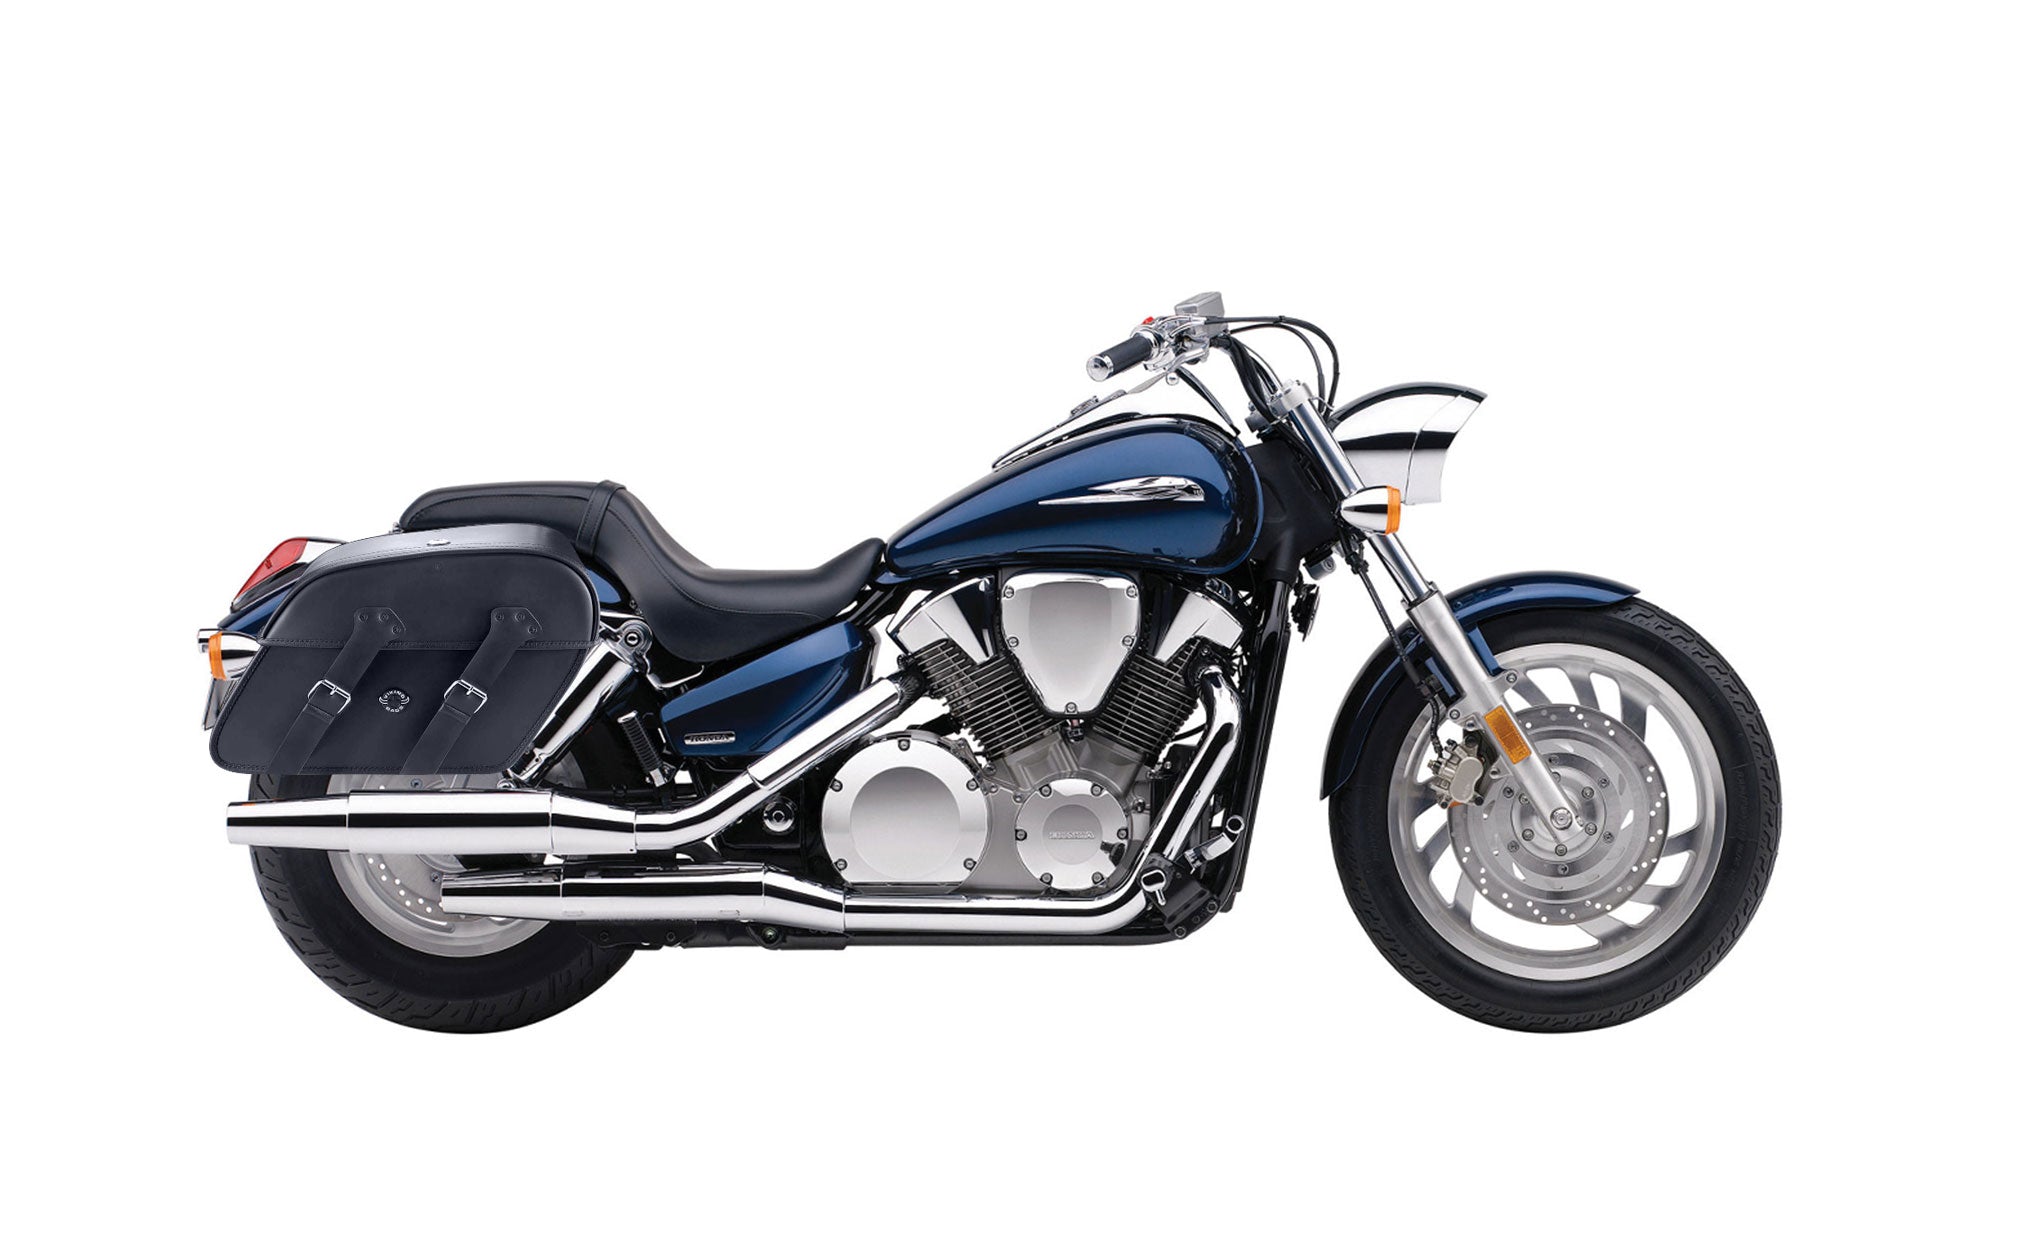 Viking Raven Extra Large Honda Vtx 1300 C Leather Motorcycle Saddlebags on Bike Photo @expand